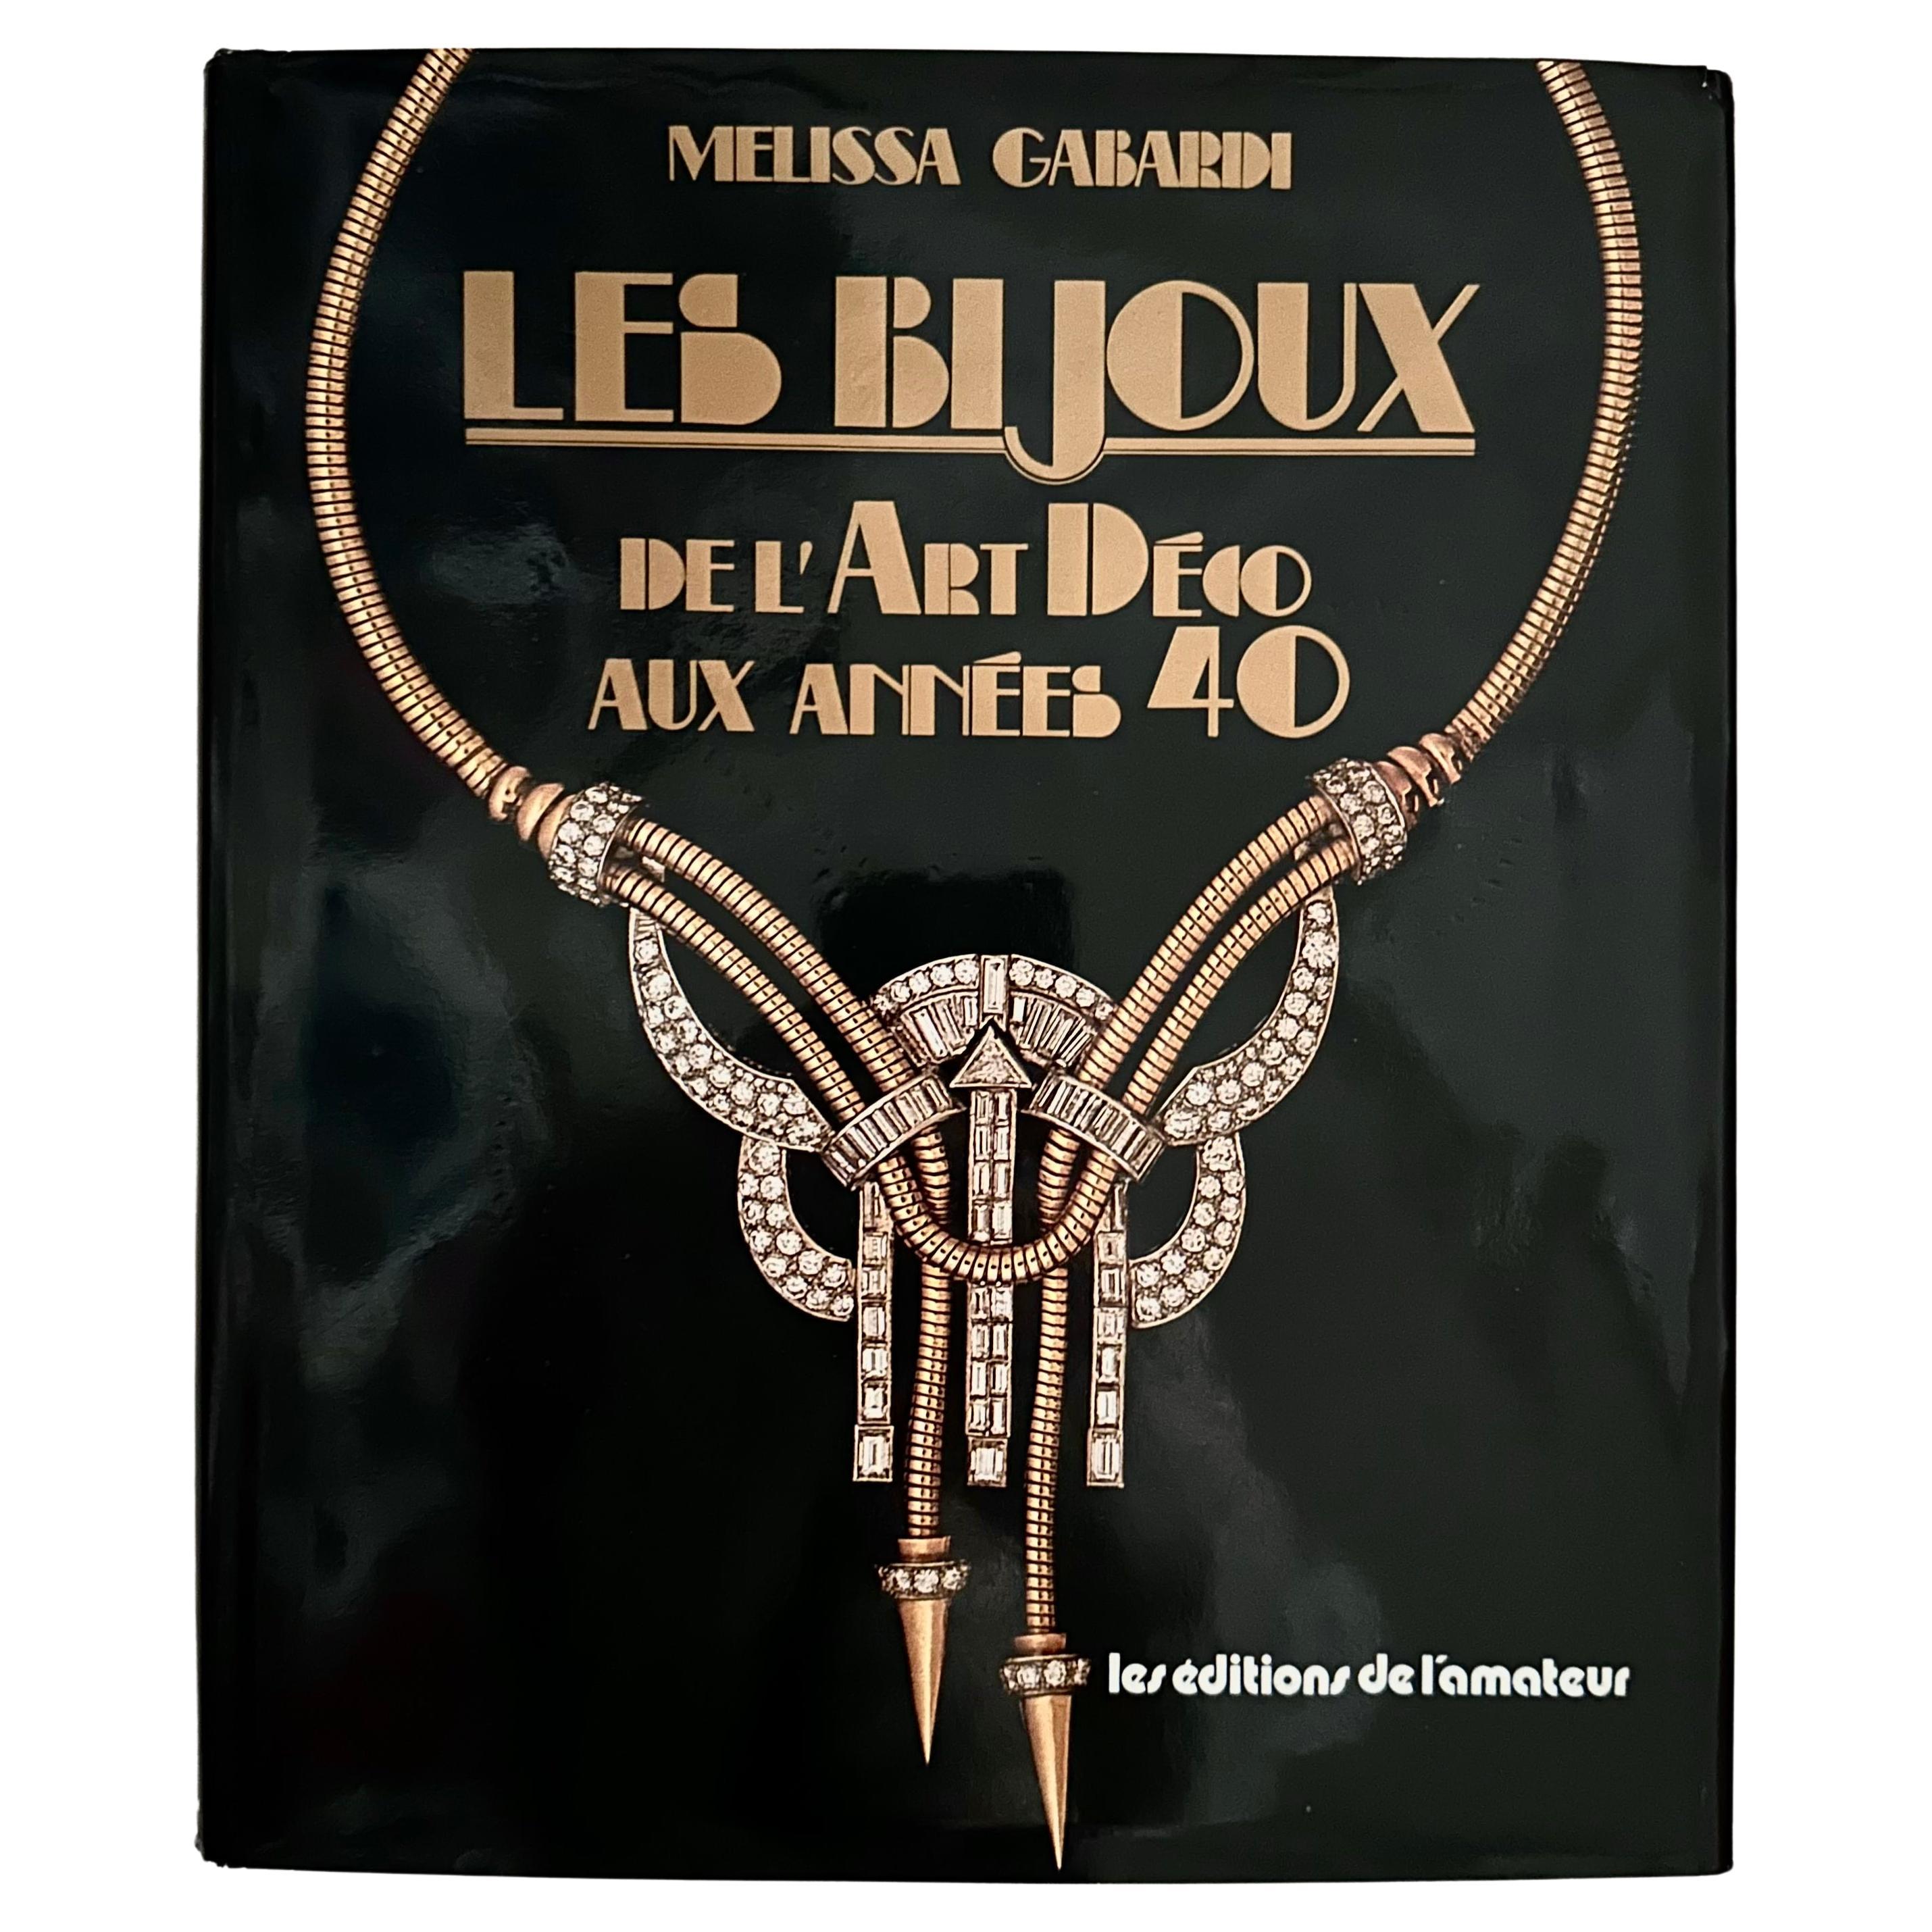 Les Bijoux de L'Art Déco aux Années 40 - Melissa Gabardi, 1st Edition, 1986 For Sale